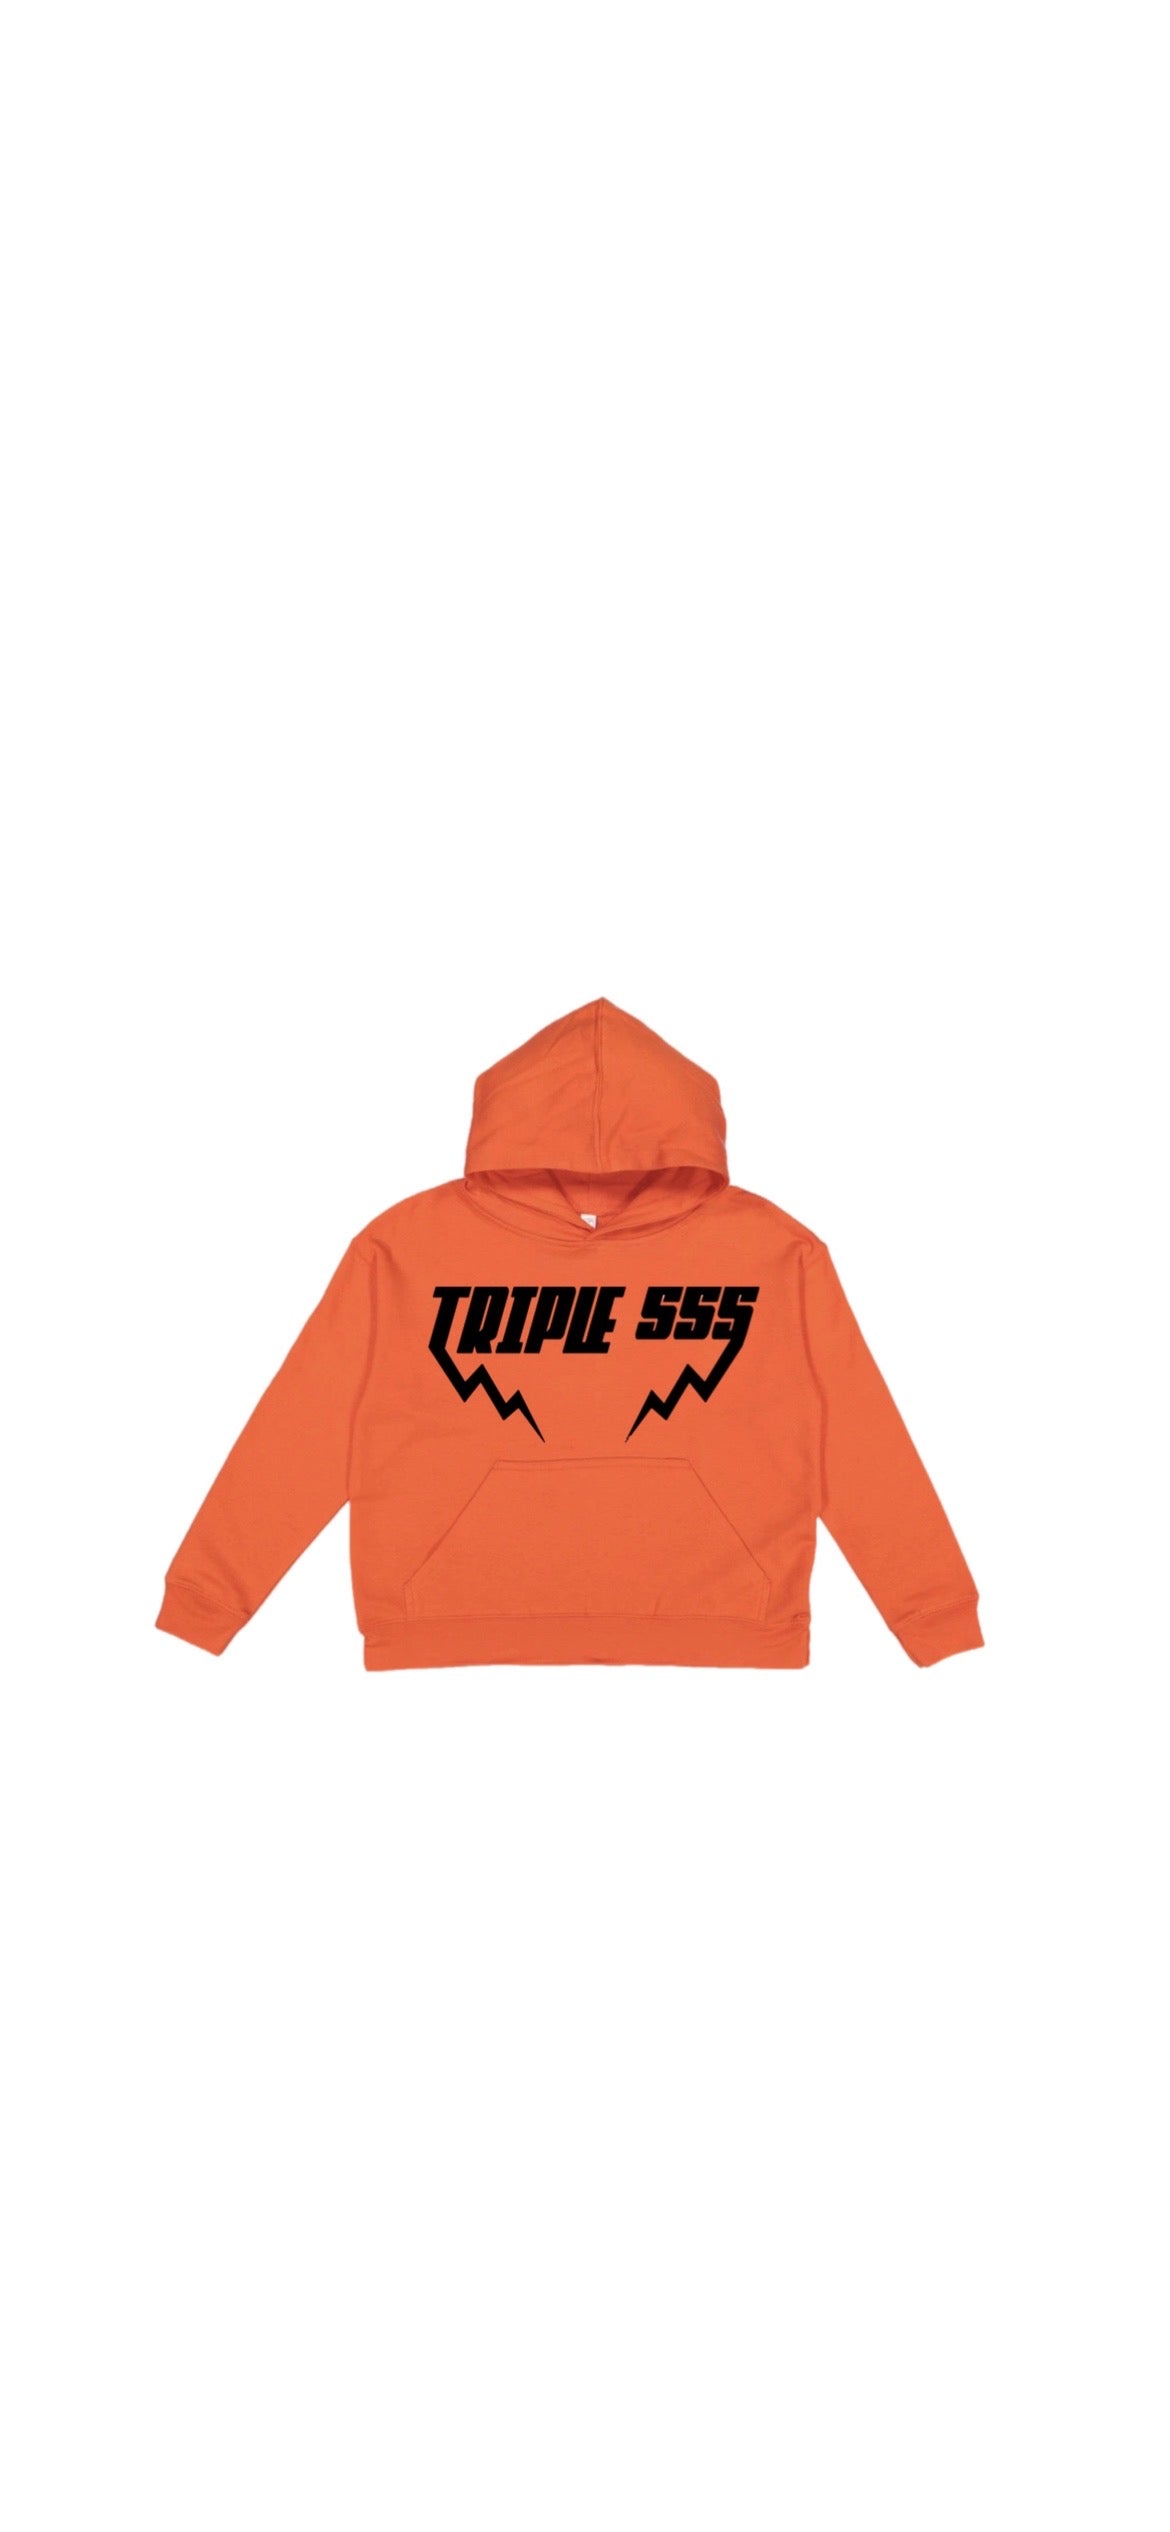 Triple 555 Orange hoodie